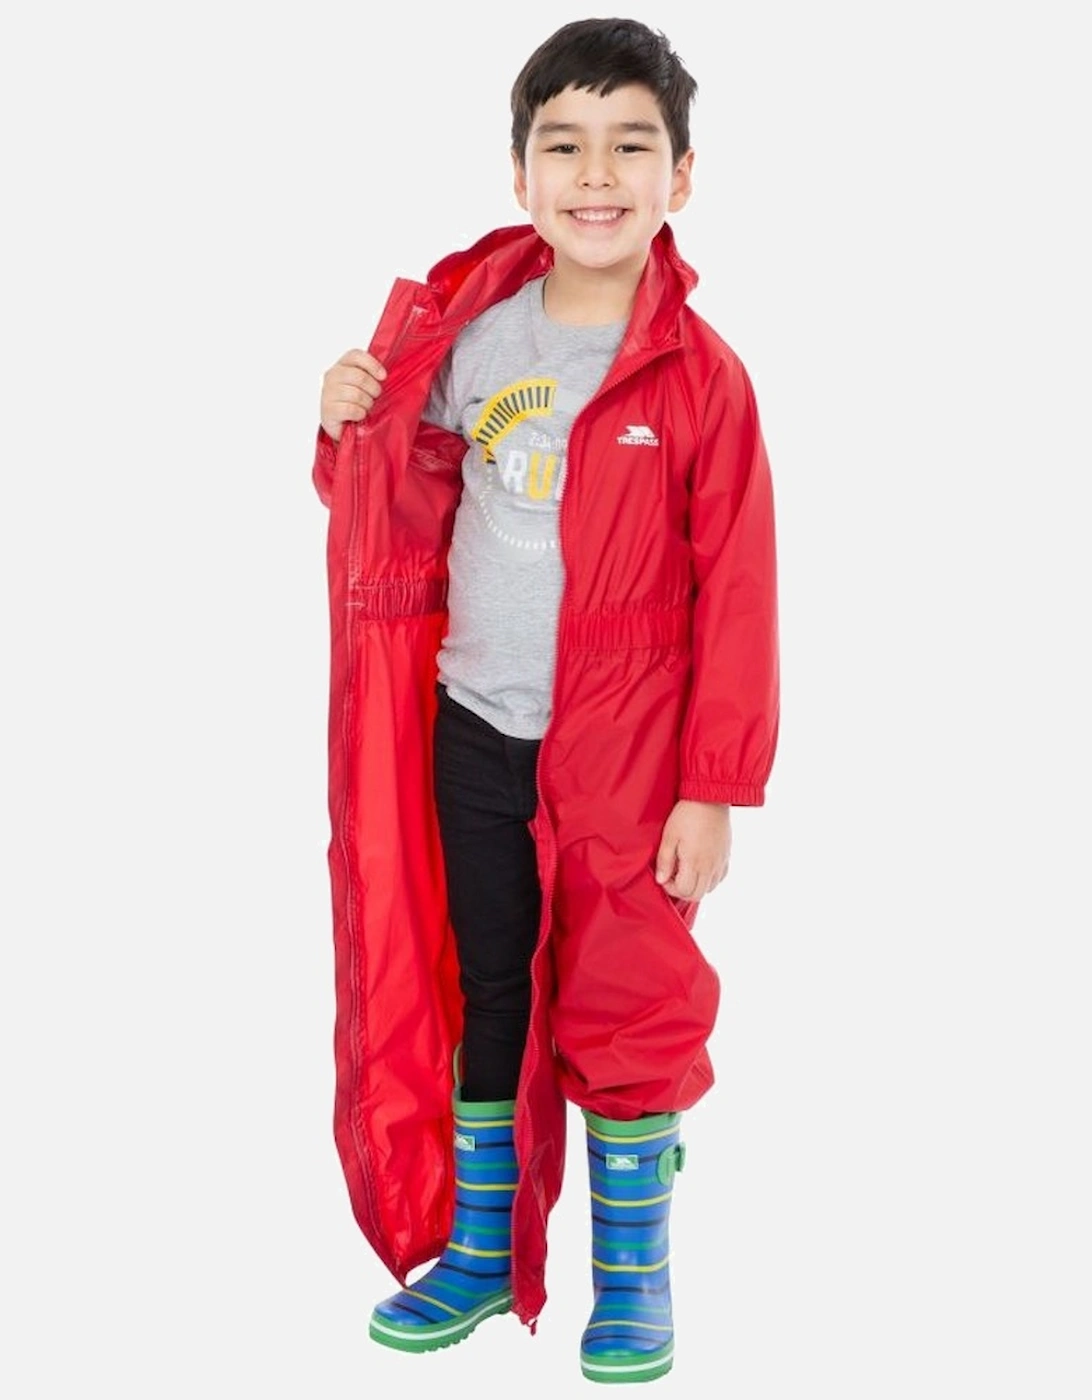 Childrens/Kids Button Rain Suit